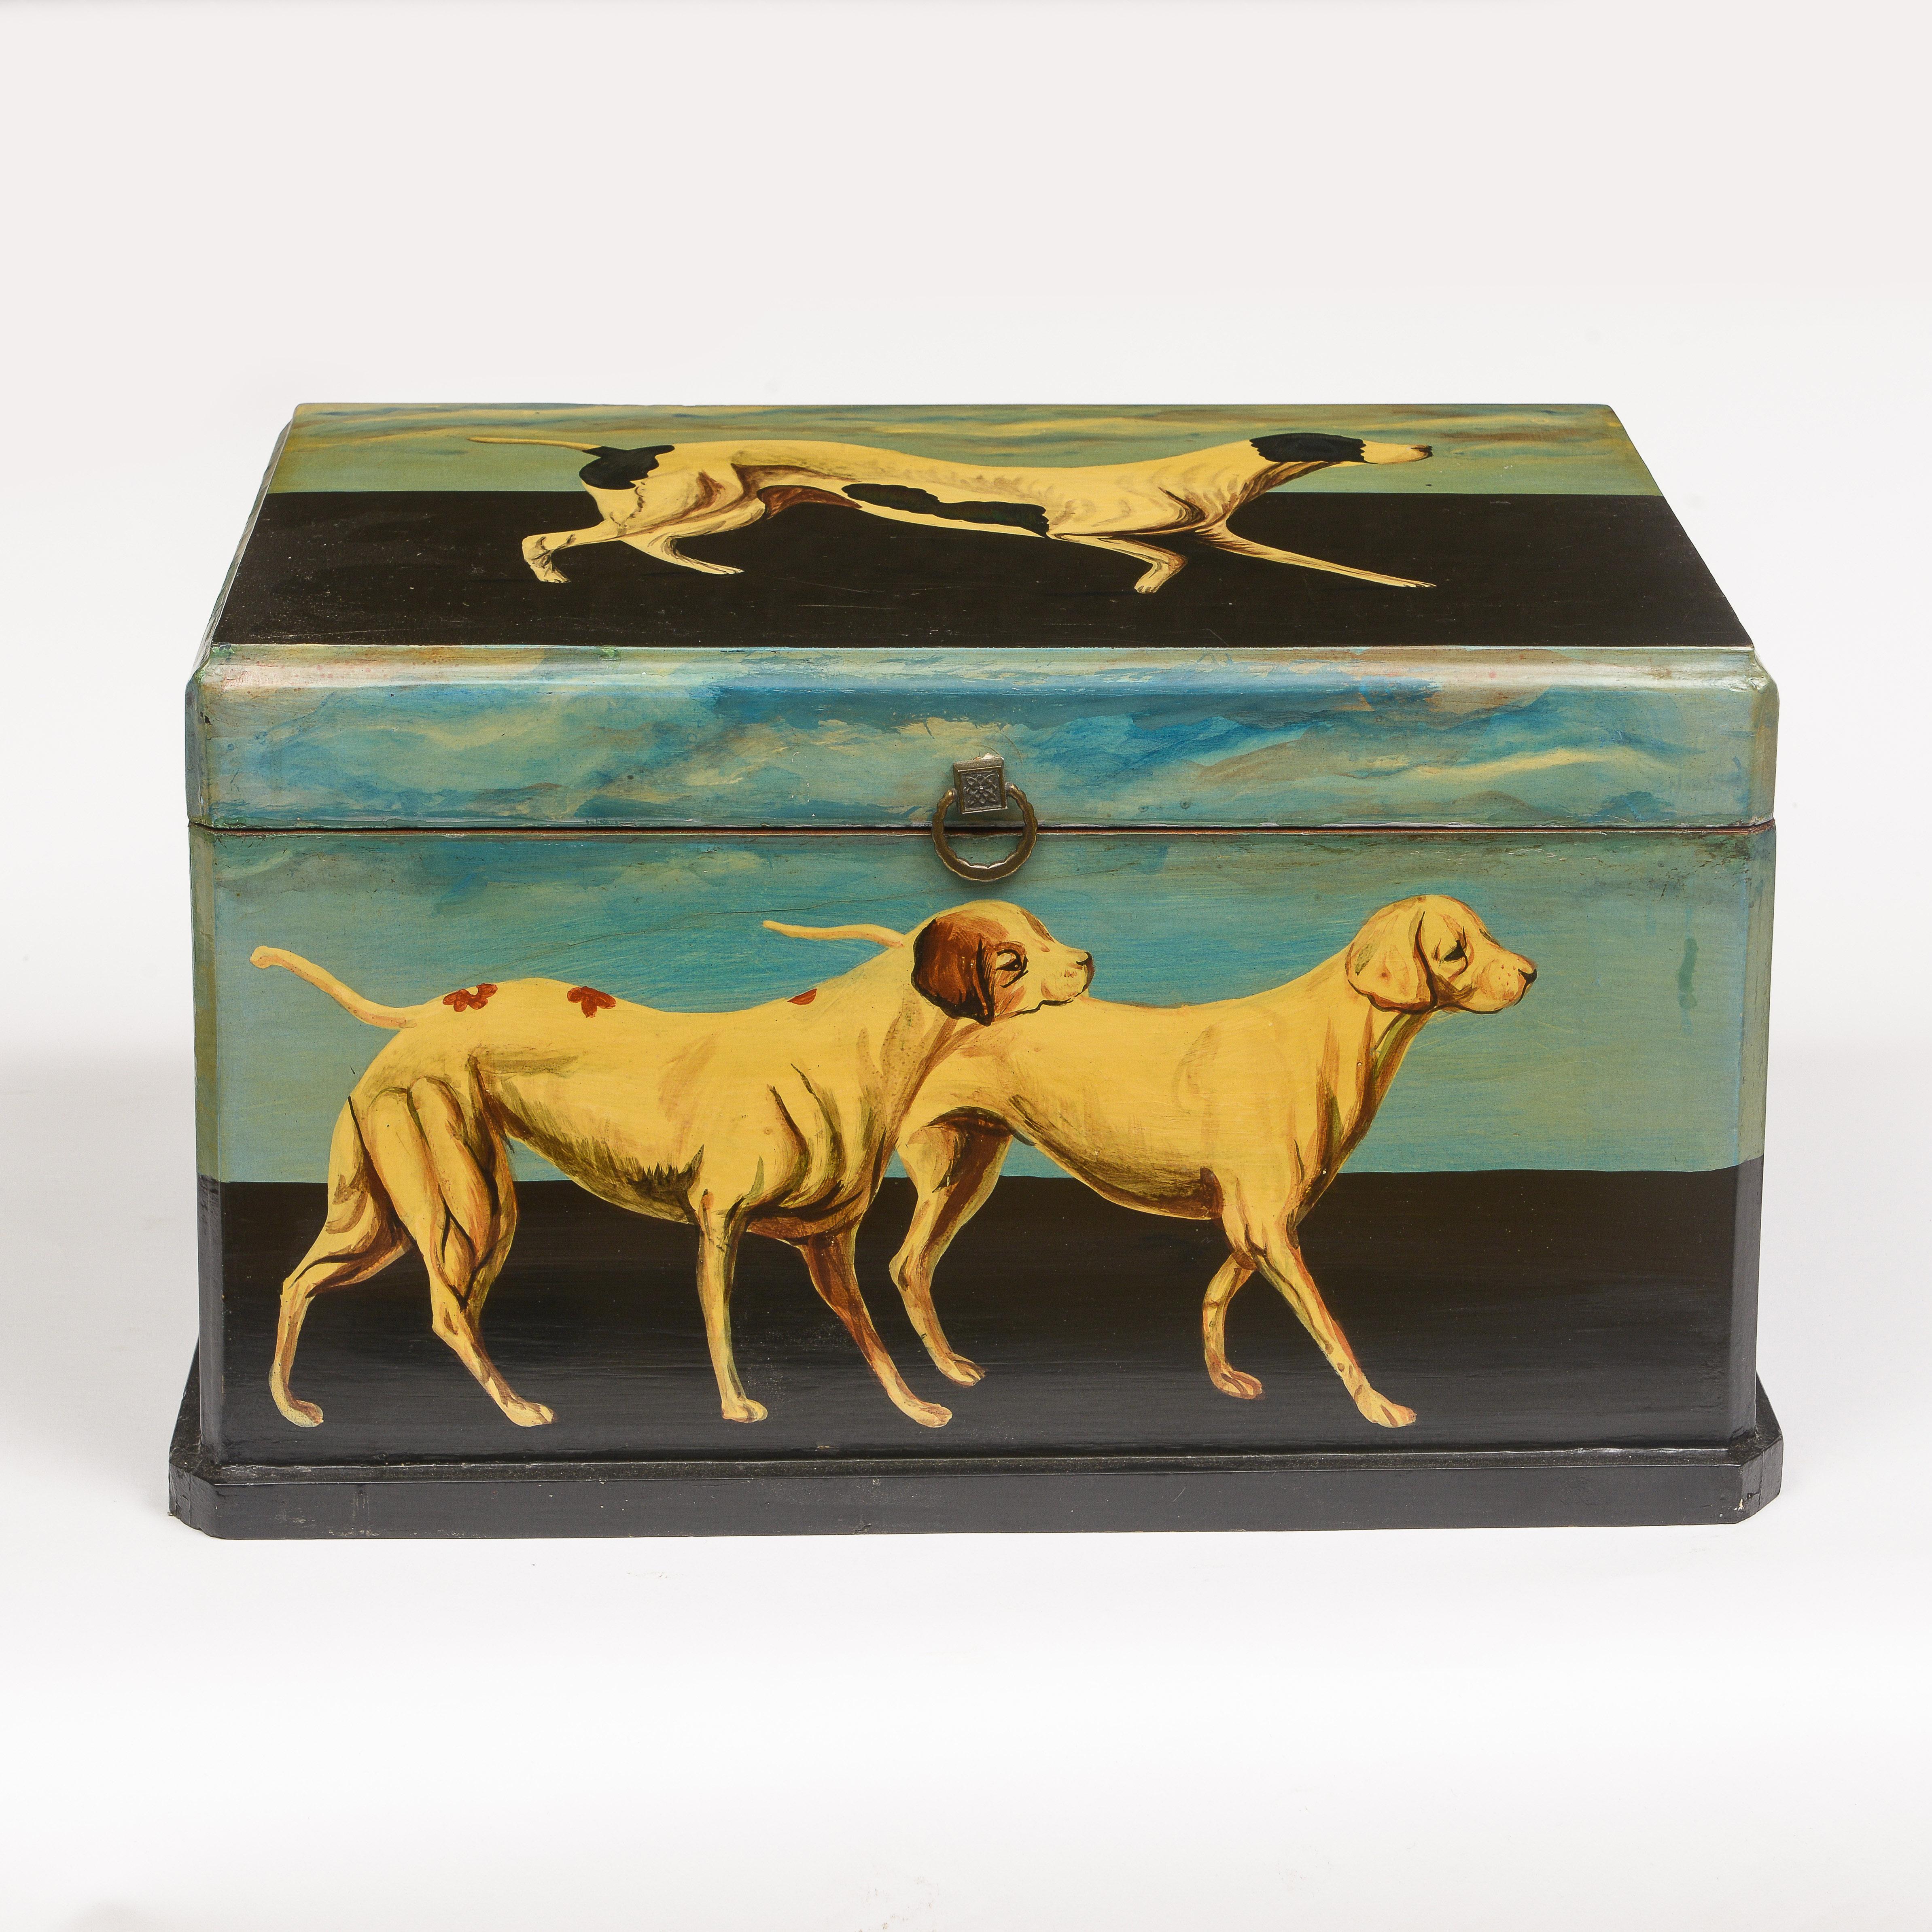 Schöner Hund gemalt Box
Gefüttert mit Gingham-Stoff
Perfekt für die Aufbewahrung von Hundezubehör.